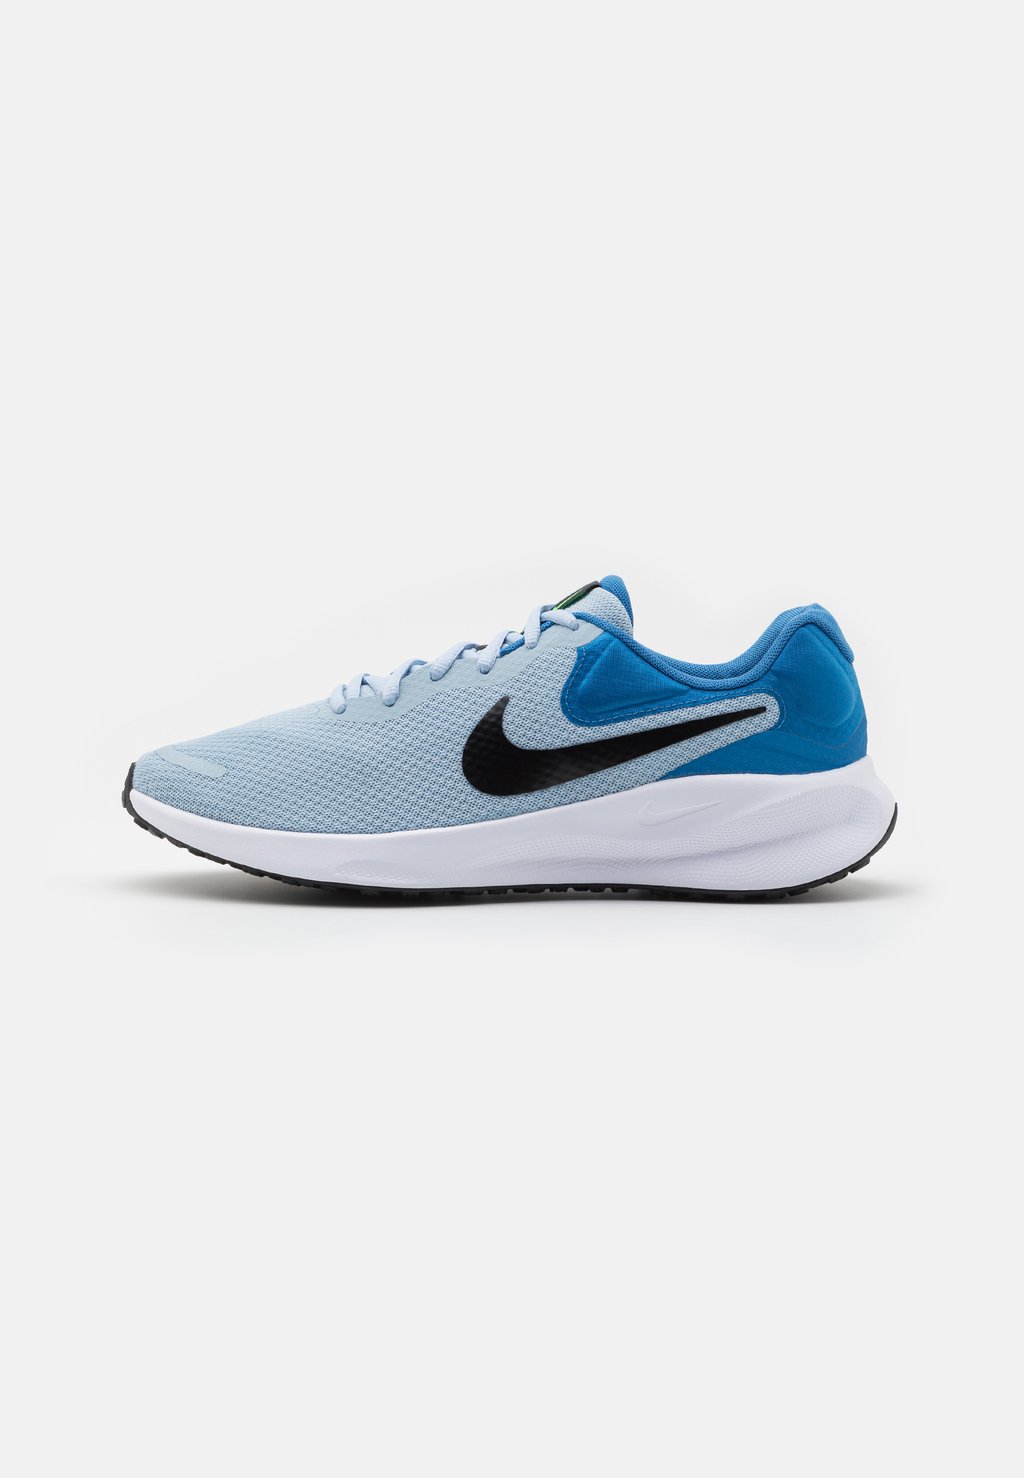 Нейтральные кроссовки Revolution 7 Nike, цвет light armory blue/black/star blue/green strike/white